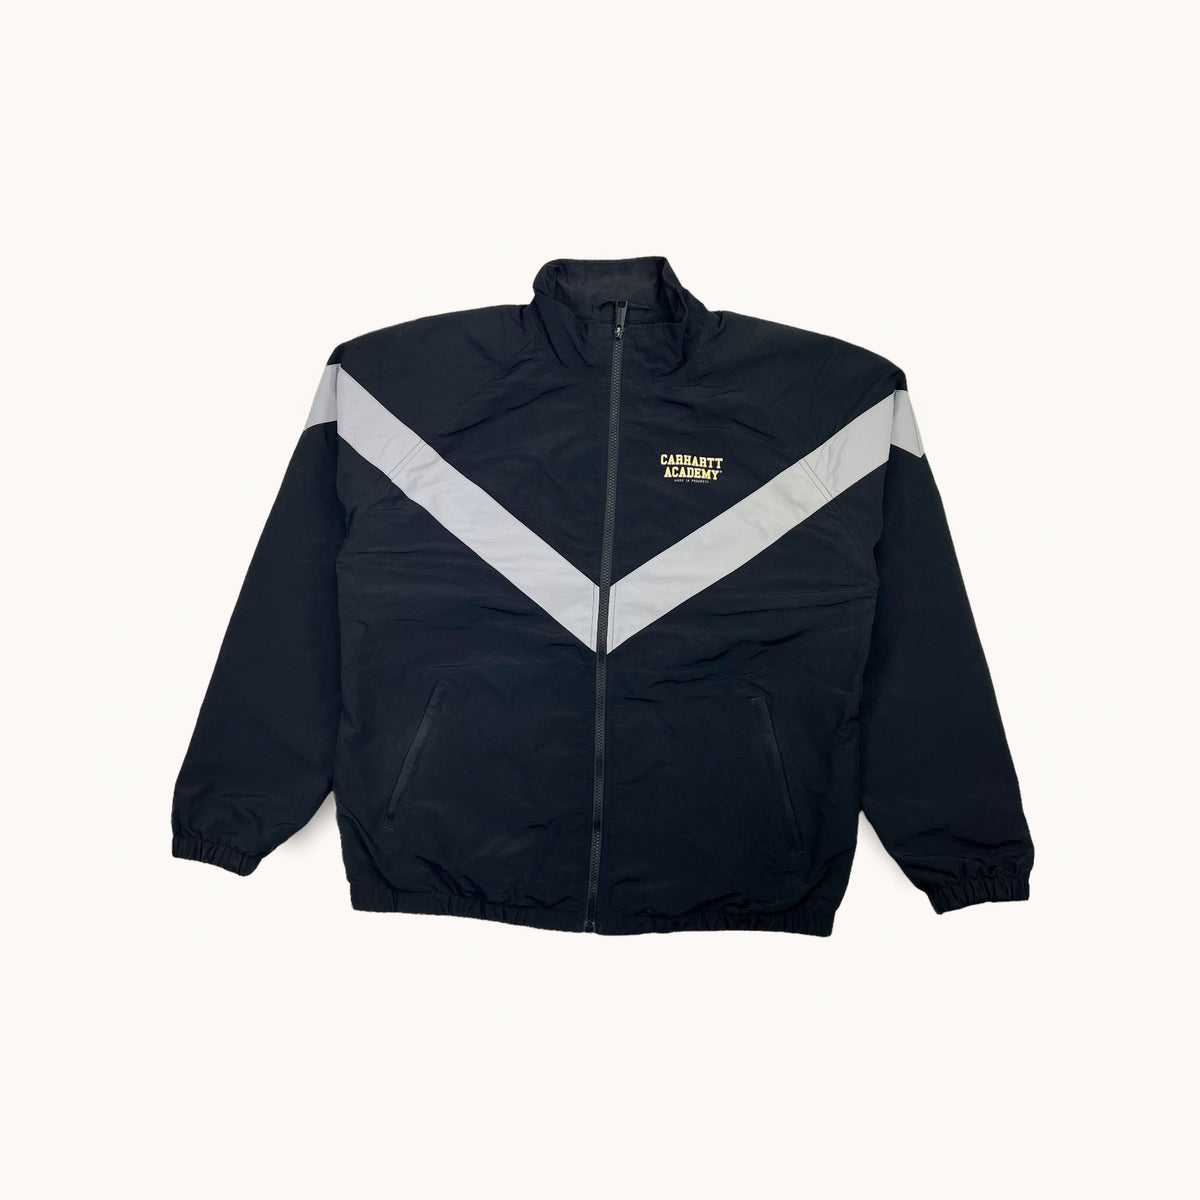 Black 90s Carhartt Academy Jacket (L) – Vintage